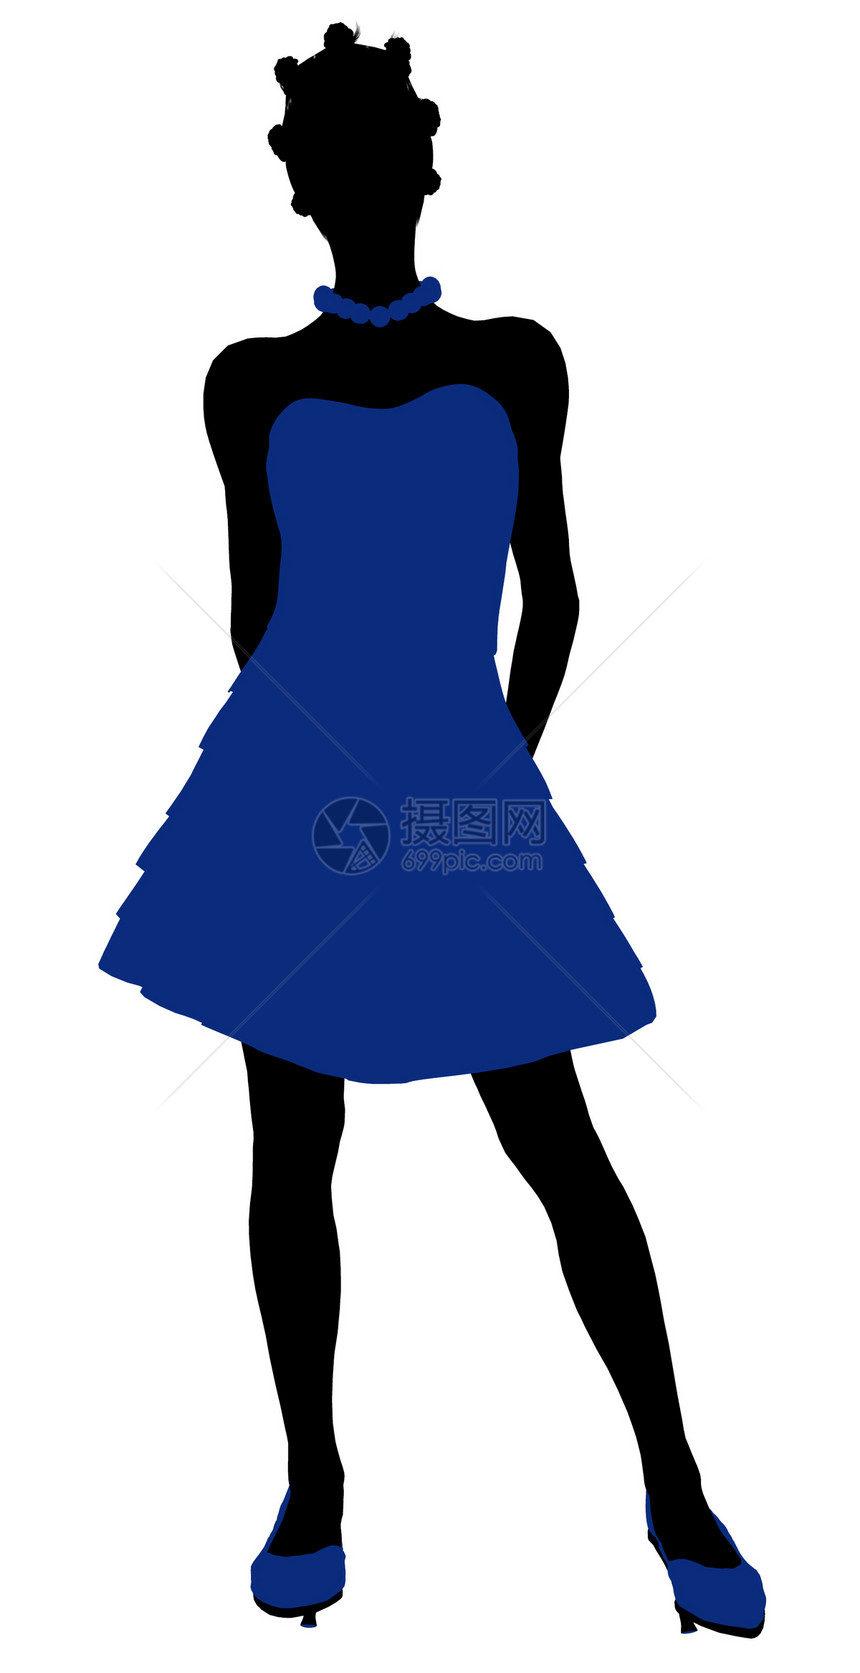 非裔美国人青少年剪影插图鞠躬高跟鞋蓝色项链女孩裙子女性图片